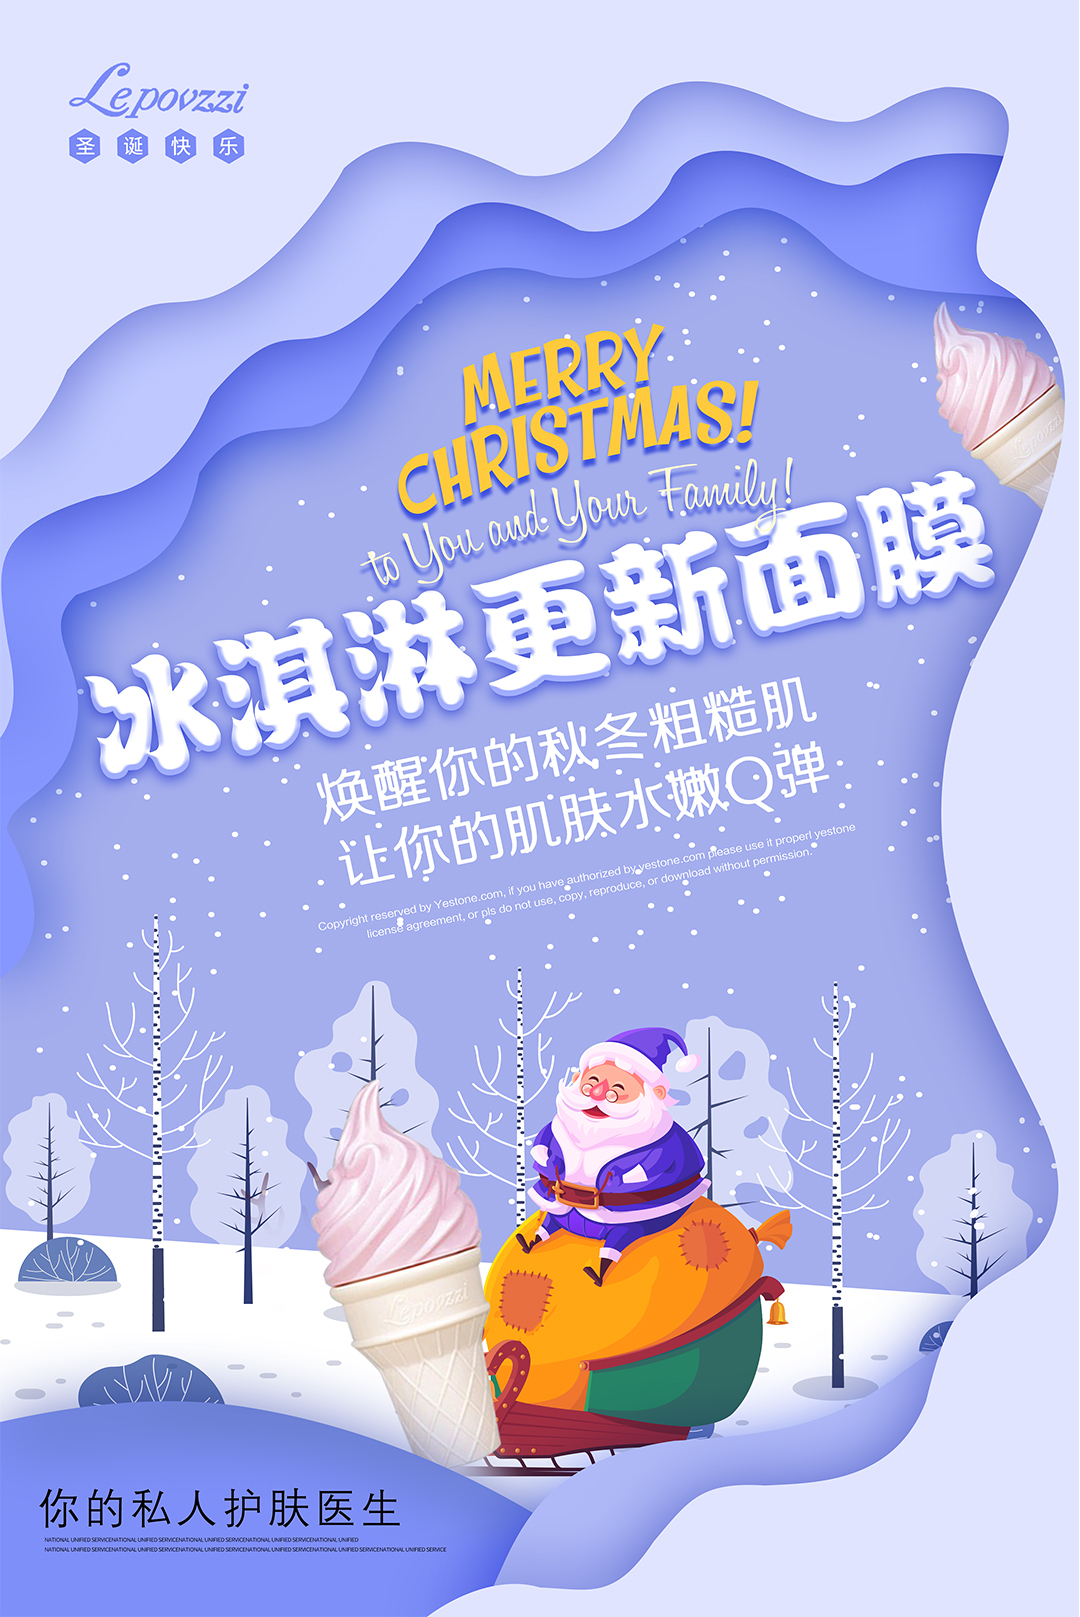 淘宝美工释空圣诞节微商宣传海报作品